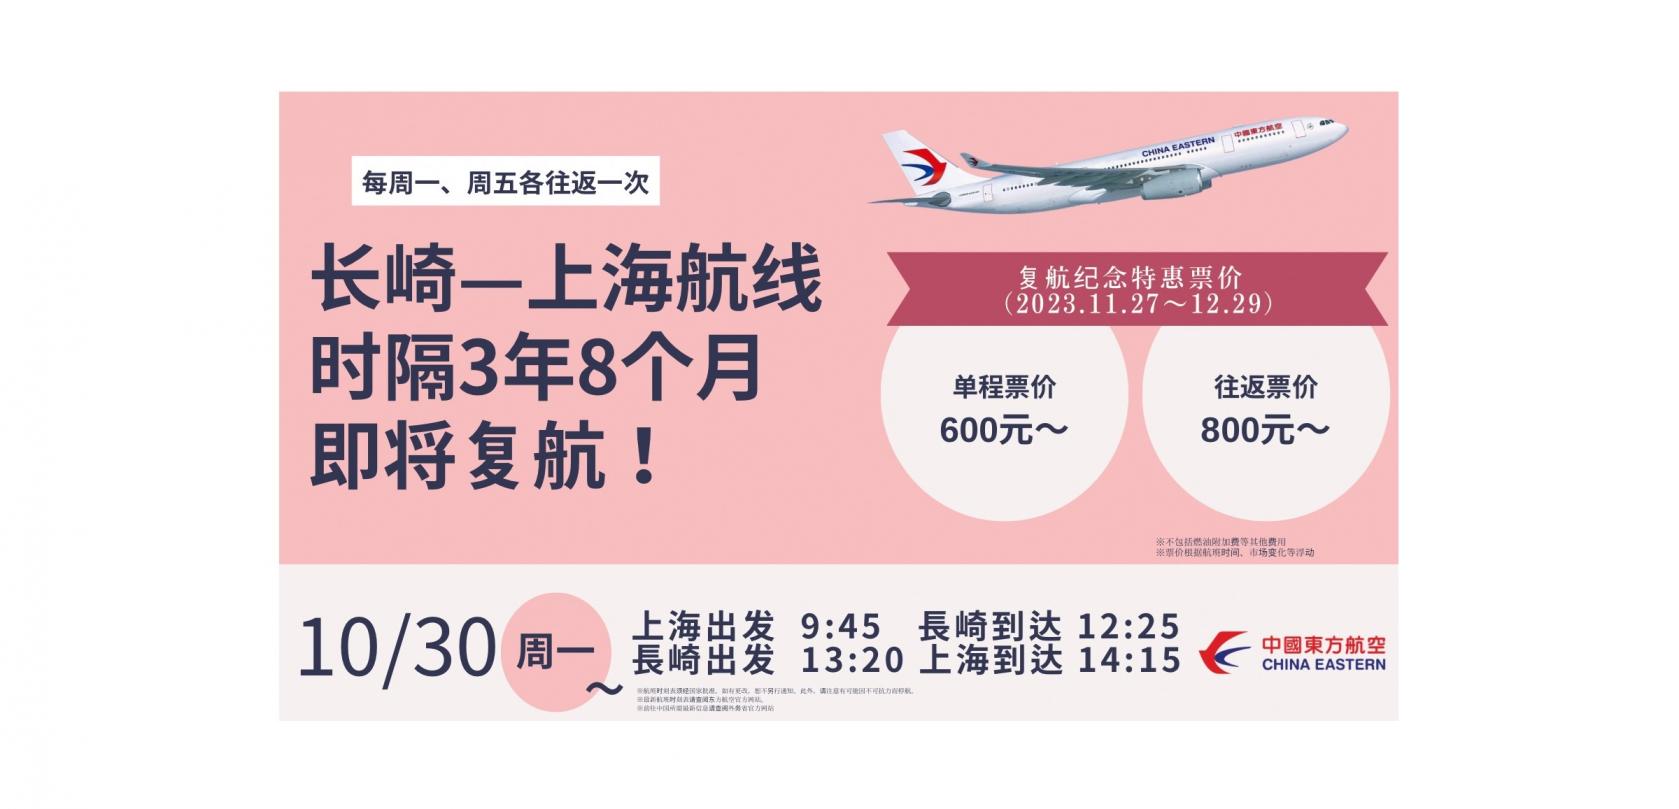 中国东方航空运营的长崎上海航线就要复航啦！-1